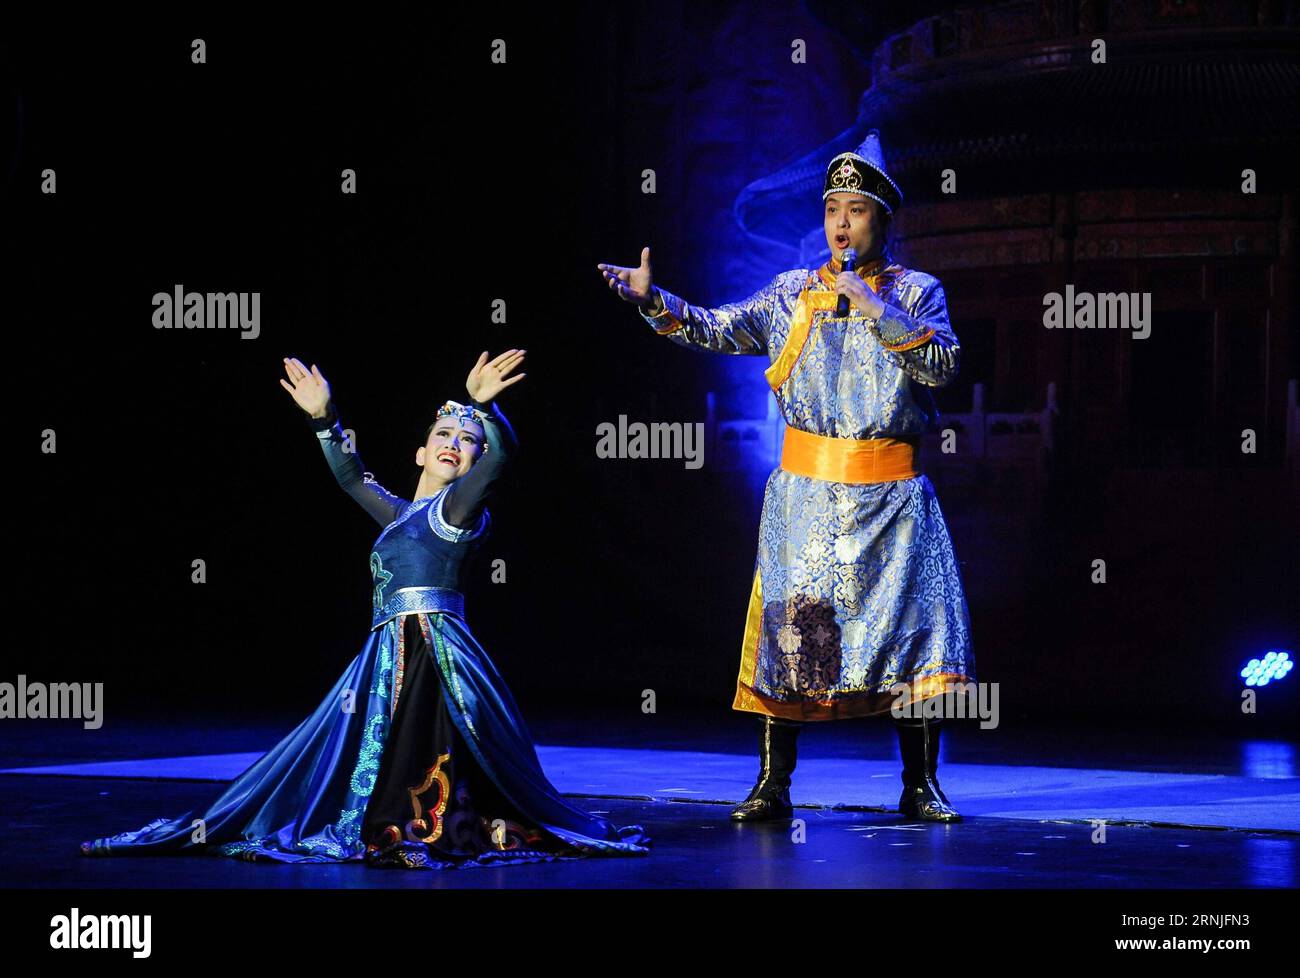 (170122) -- LOS ANGELES, 21 janvier 2017 -- des artistes chantent et dansent pendant le joyeux nouvel an chinois, charmant événement de Pékin pour célébrer le prochain nouvel an lunaire chinois à Beverly Hills, Los Angeles, États-Unis, le 21 janvier 2017.) (zw) U.S.-BEVERLY HILLS-CHINA-LUNAR NOUVEL AN-PERFORMANCE ZhangxChaoqun PUBLICATIONxNOTxINxCHN Los Angeles Jan 21 2017 artistes chanter et danser pendant le joyeux nouvel an chinois CHARMANT Beijing événement pour célébrer le prochain nouvel an lunaire chinois à Beverly Hills Los Angeles États-Unis Jan 21 2017 ZW U S Beverly Hills Chine performance lunaire du nouvel an Banque D'Images